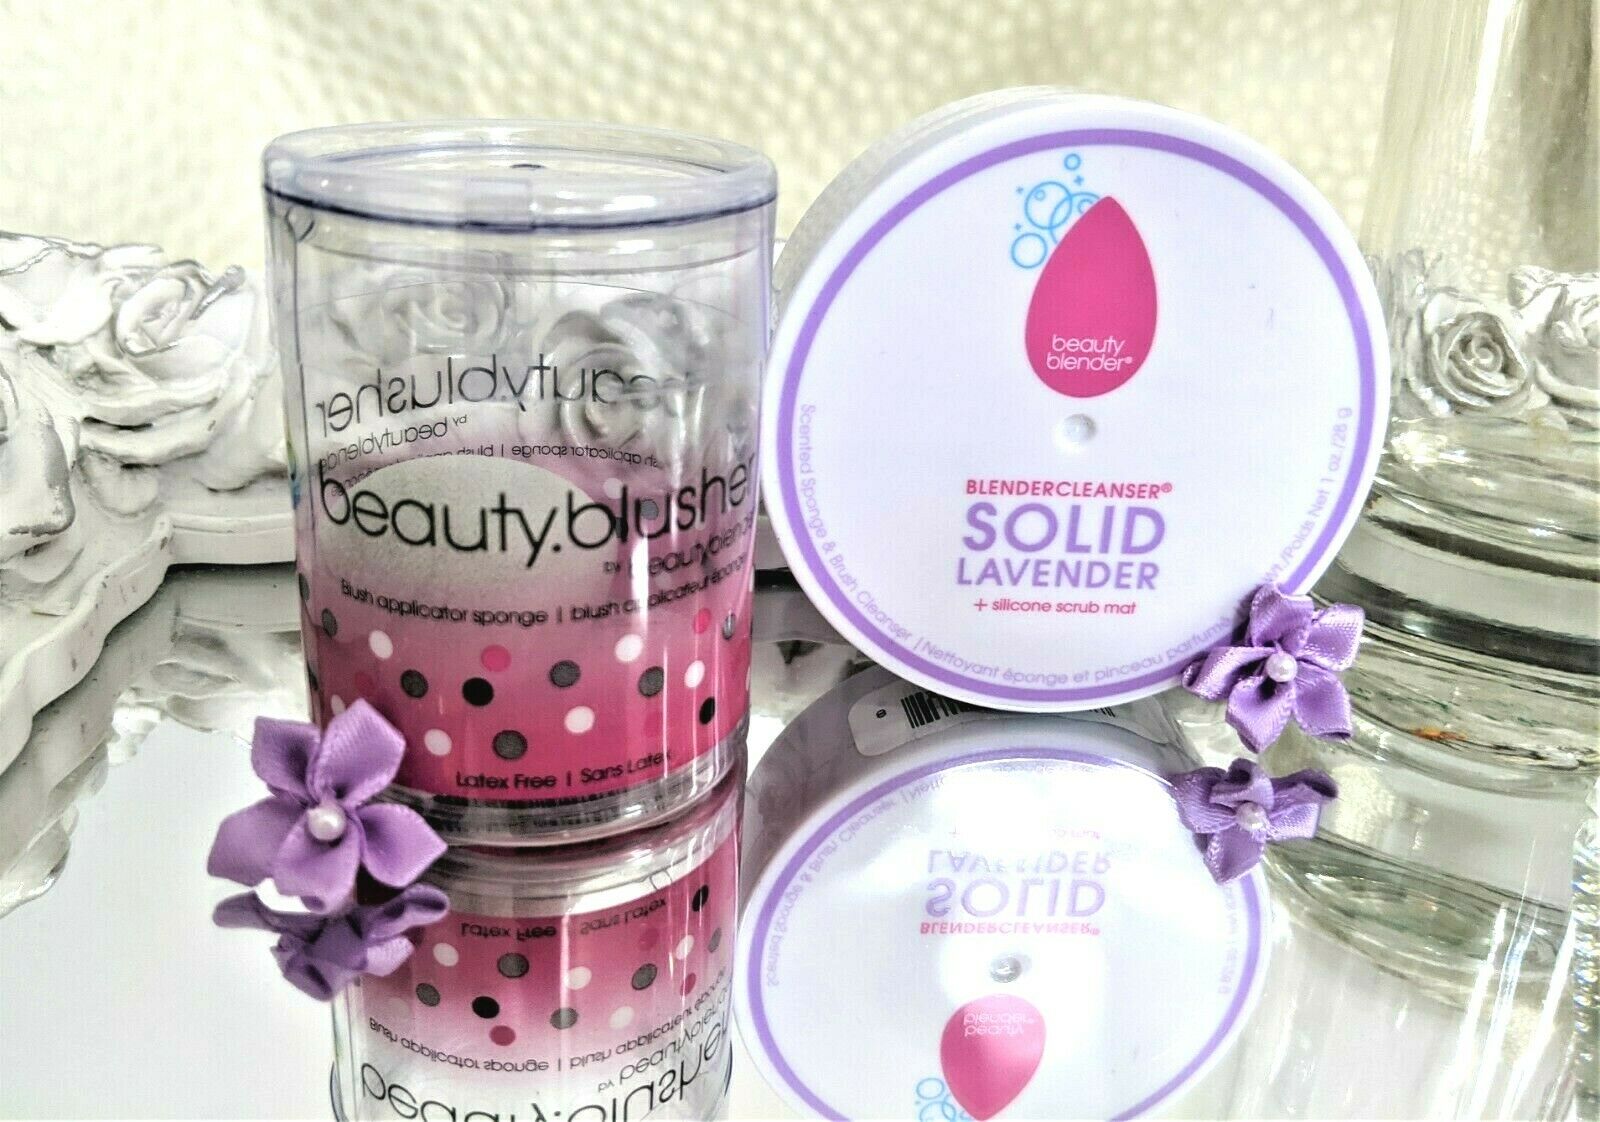 Beauty Blender Blendercleanser Solid Lavender 1 Oz  & Beauty.blusher Sponge